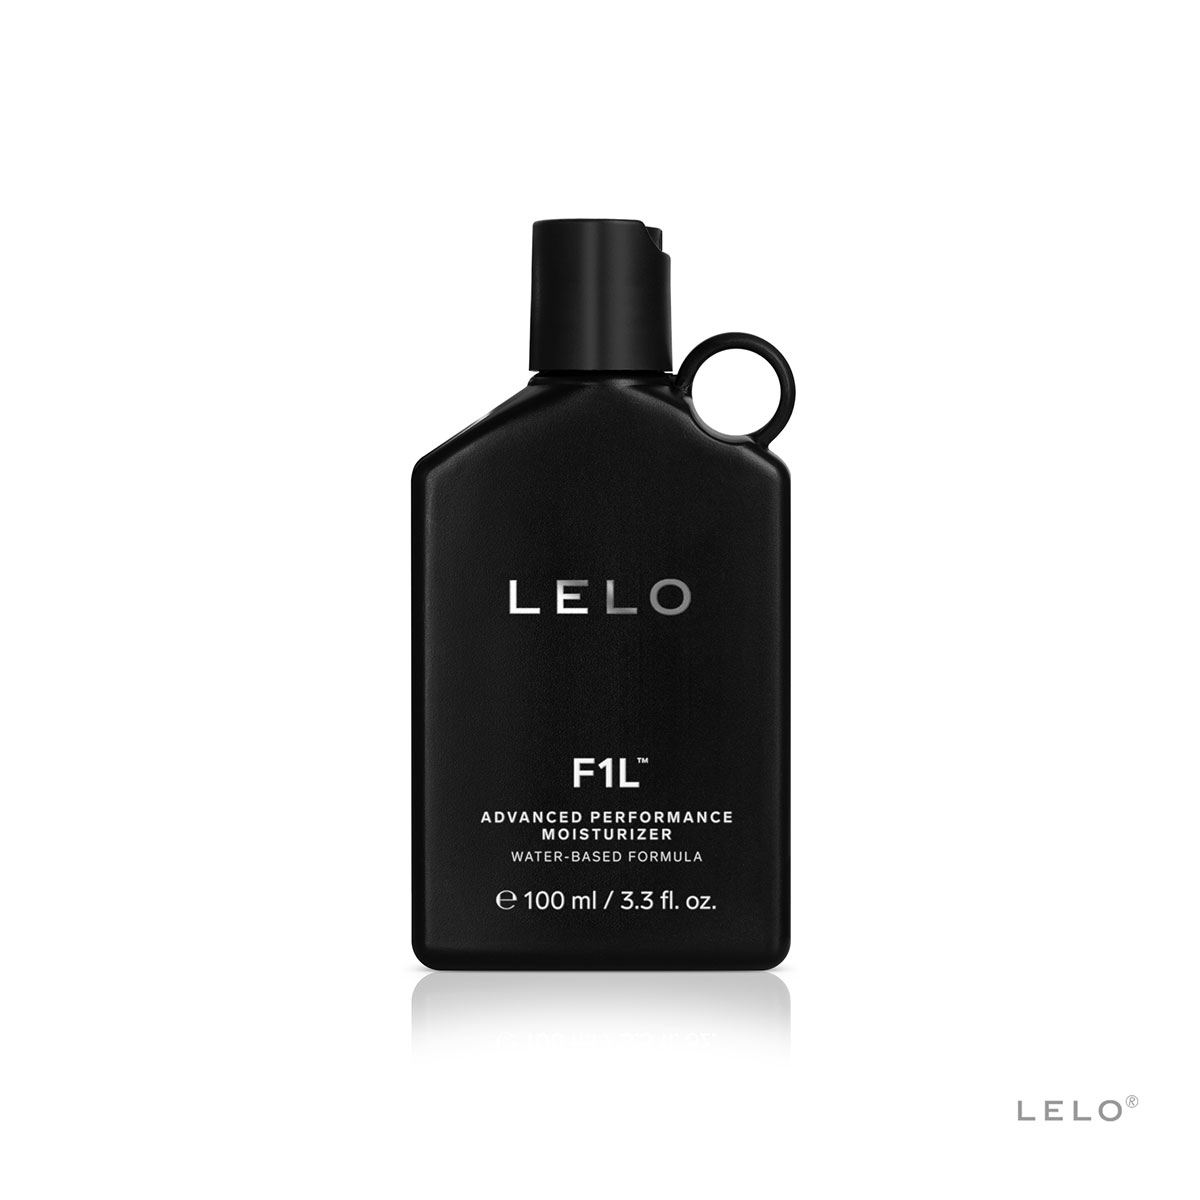 Lelo F1L Moisturizer - лубрикант на водной основе, 100 мл - фото 1